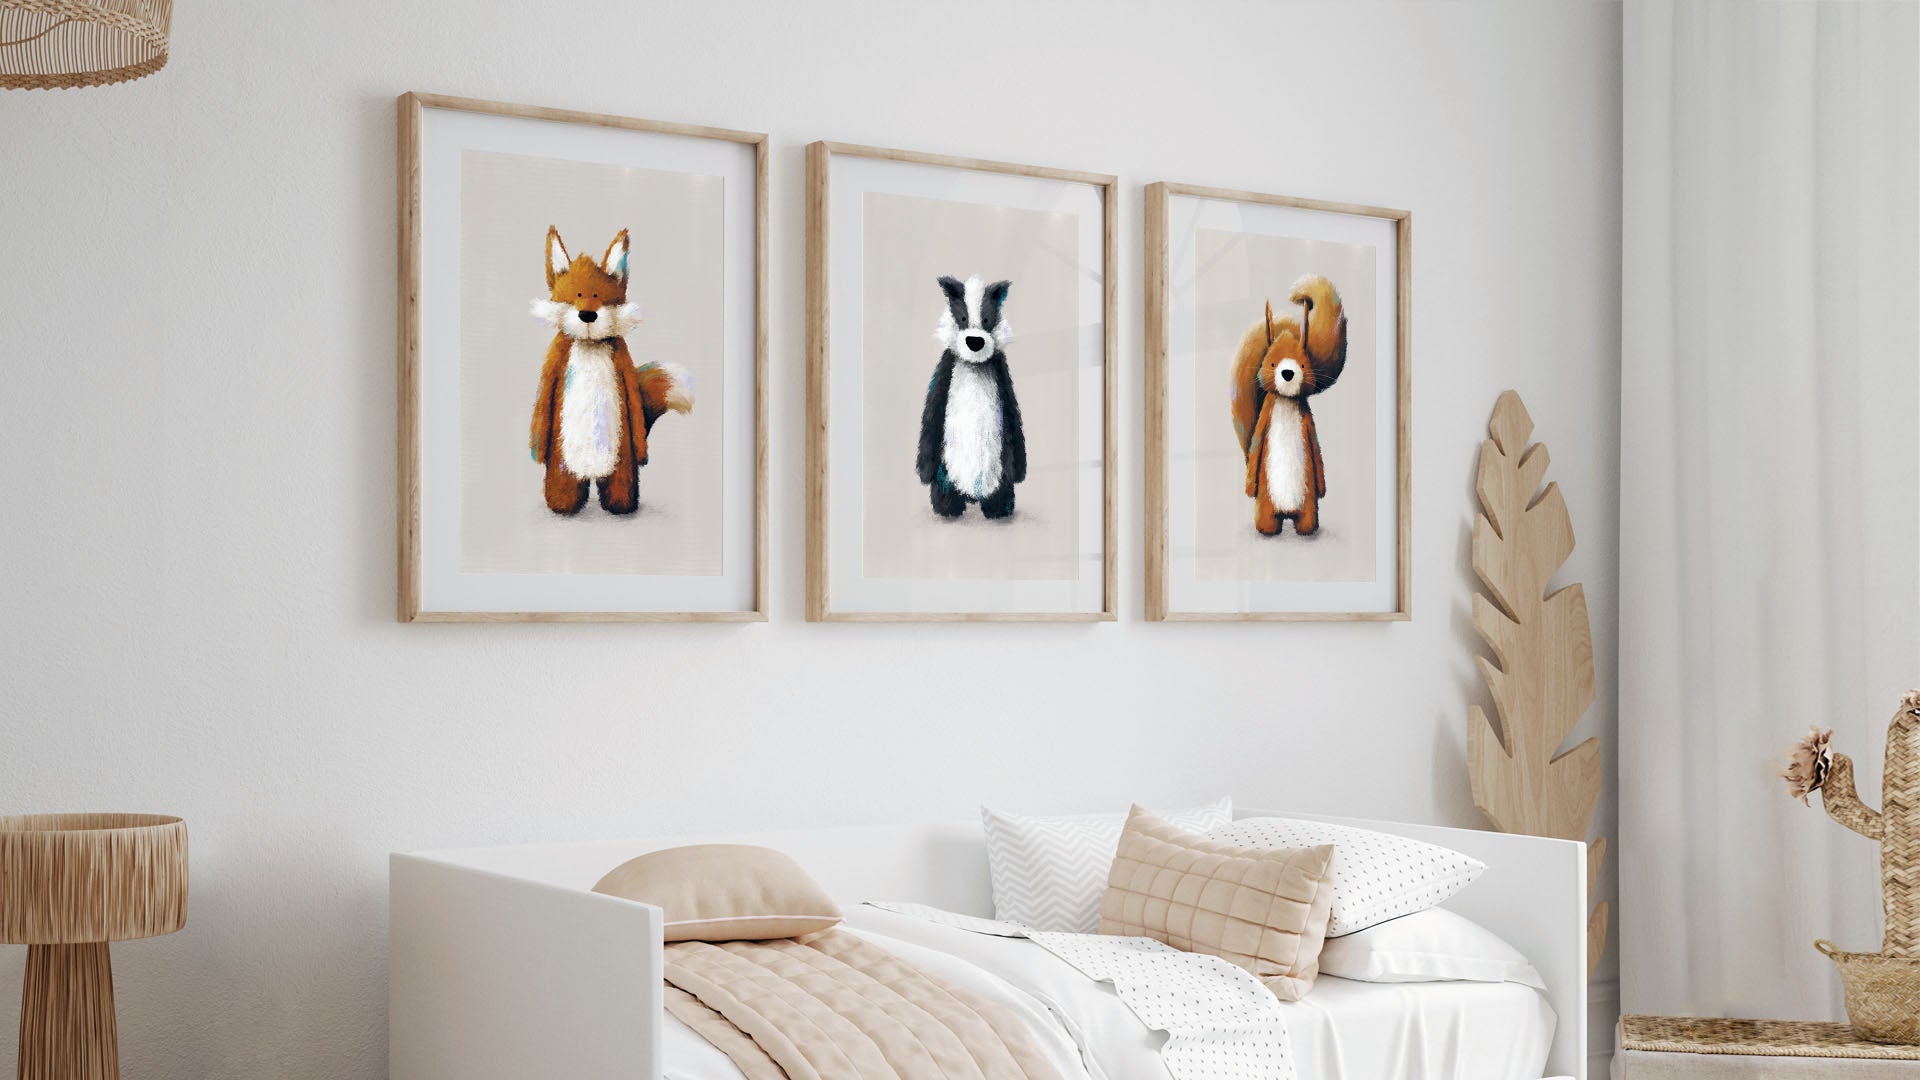 Nursery prints in frames